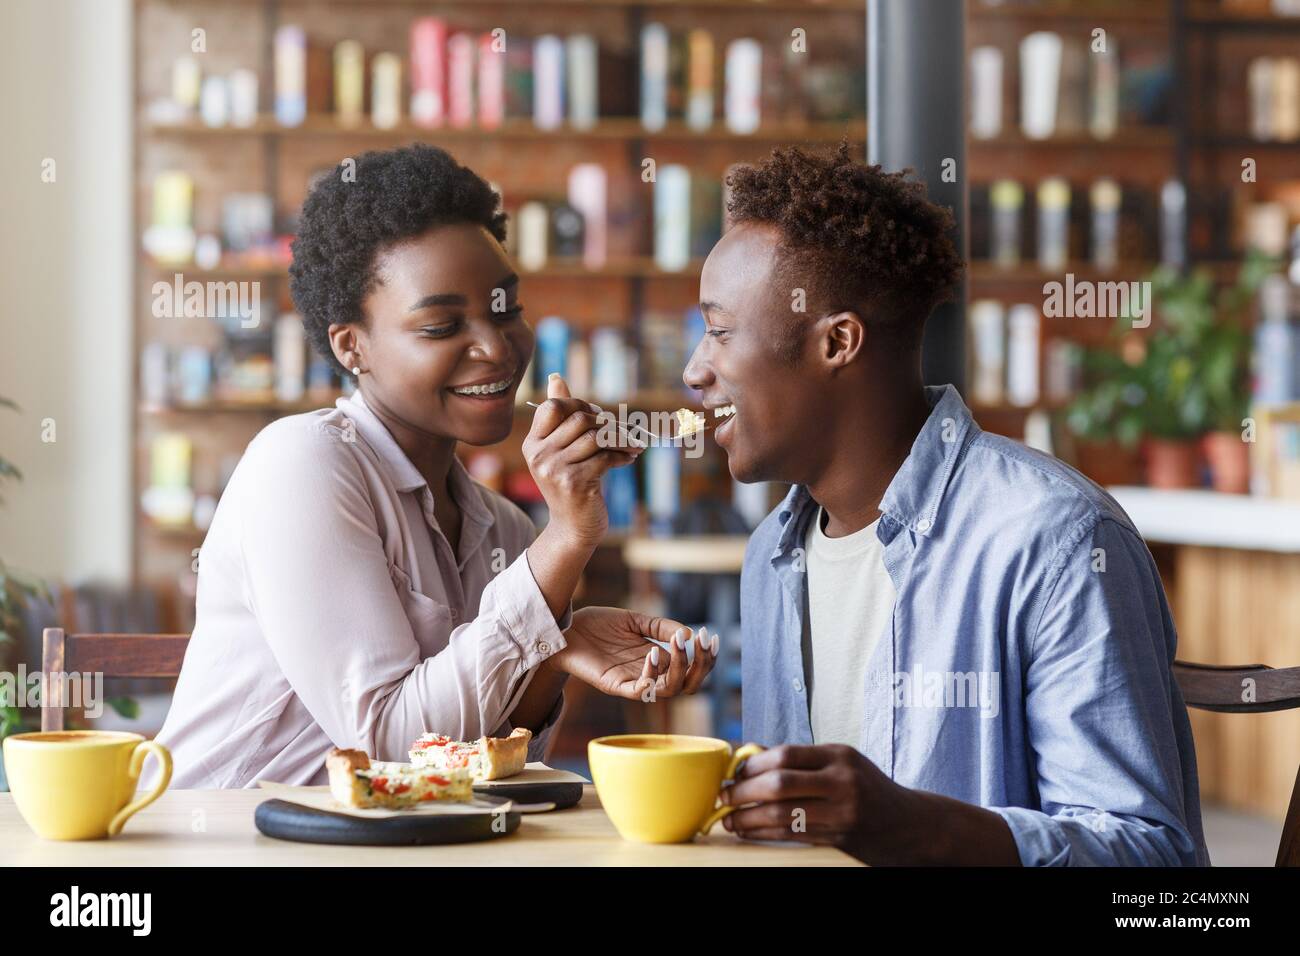 Beautiful Black Girl Feeding Yummy Pie To Her Boyfriend At Cozy Cafe Stock Photo - Alamy